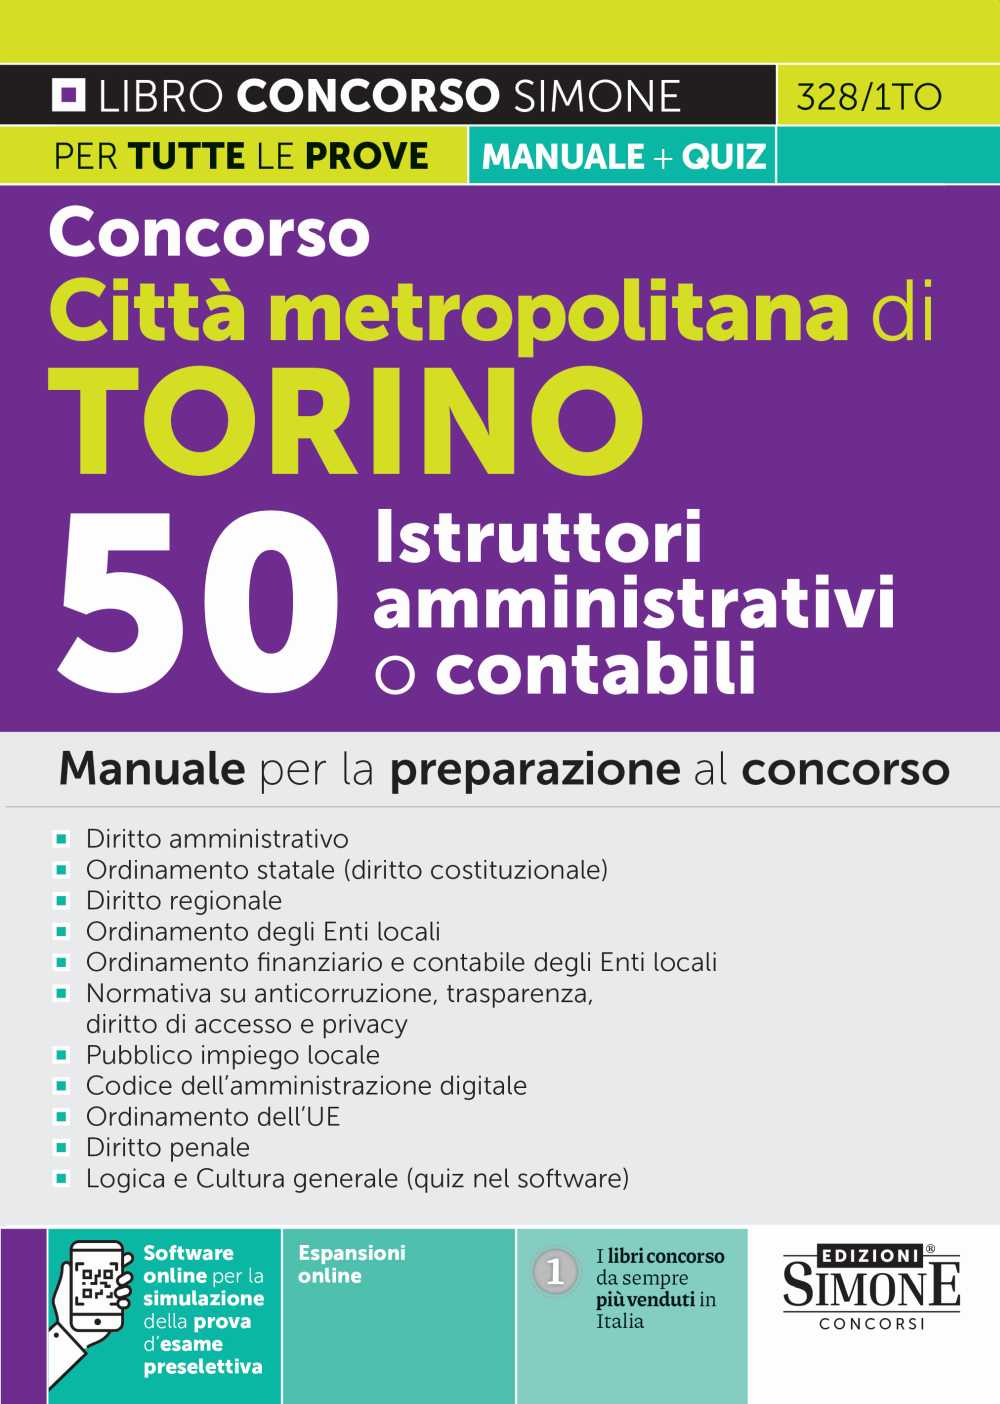 Concorso Città metropolitana di Torino - 50 Istruttori amministrativi o contabili - Manuale per la preparazione al concorso - 328/1TO